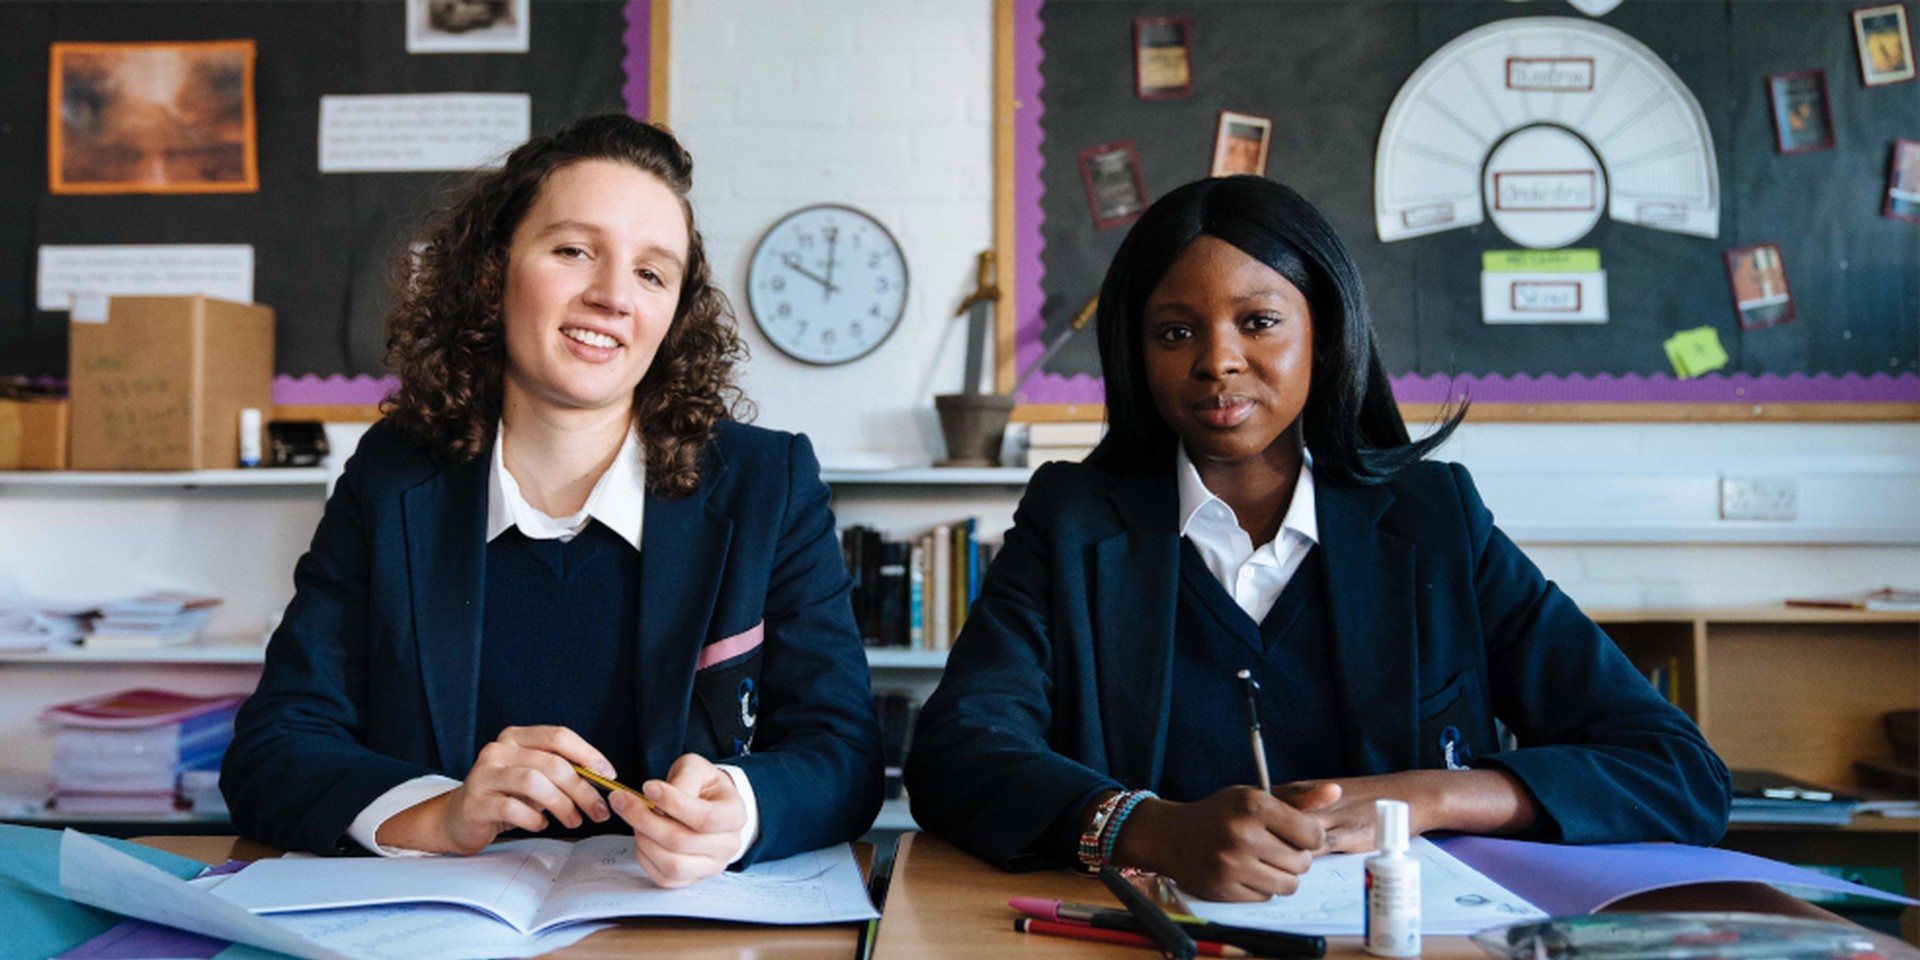 Zwei Mädchen mit englischen Schuluniformen sitzen in einer Schulklasse.